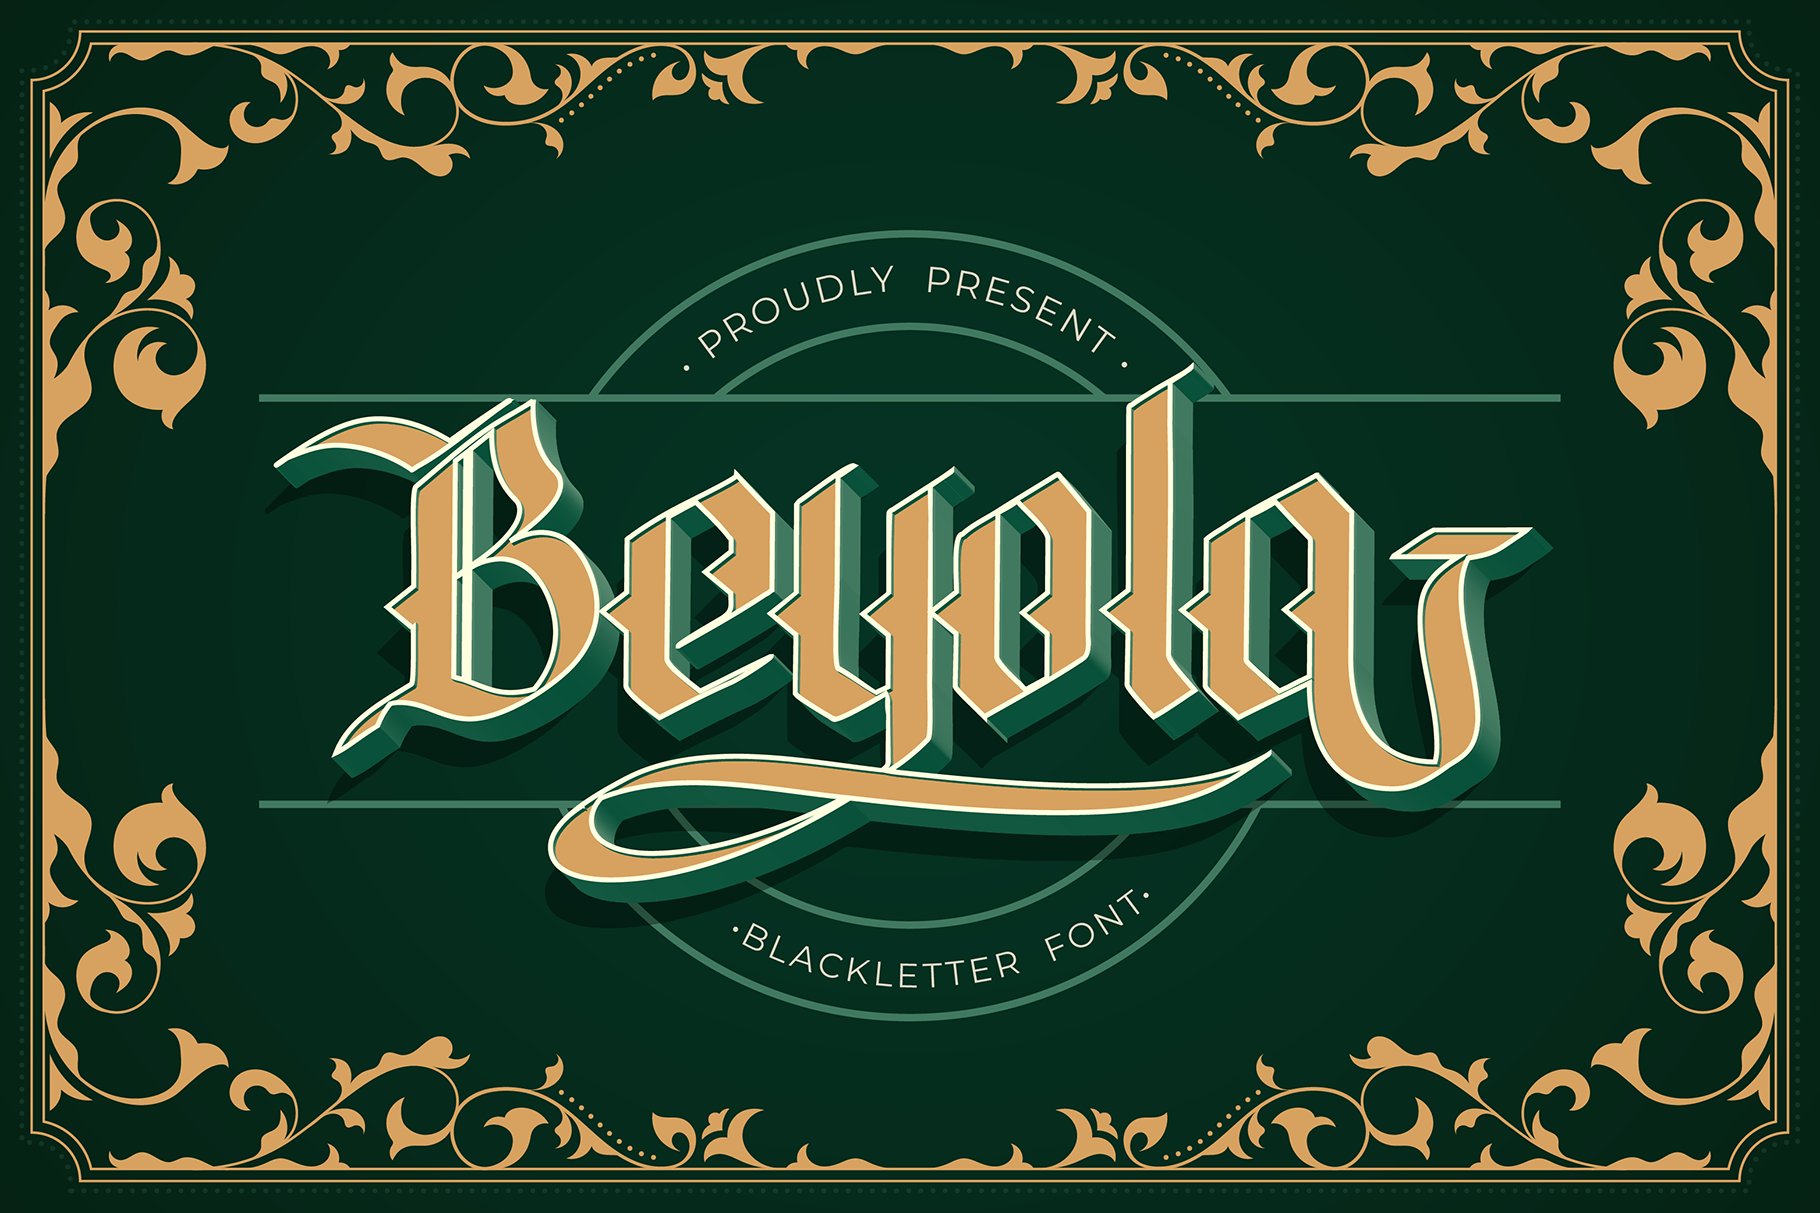 Beyola Blackletter Font cover image.